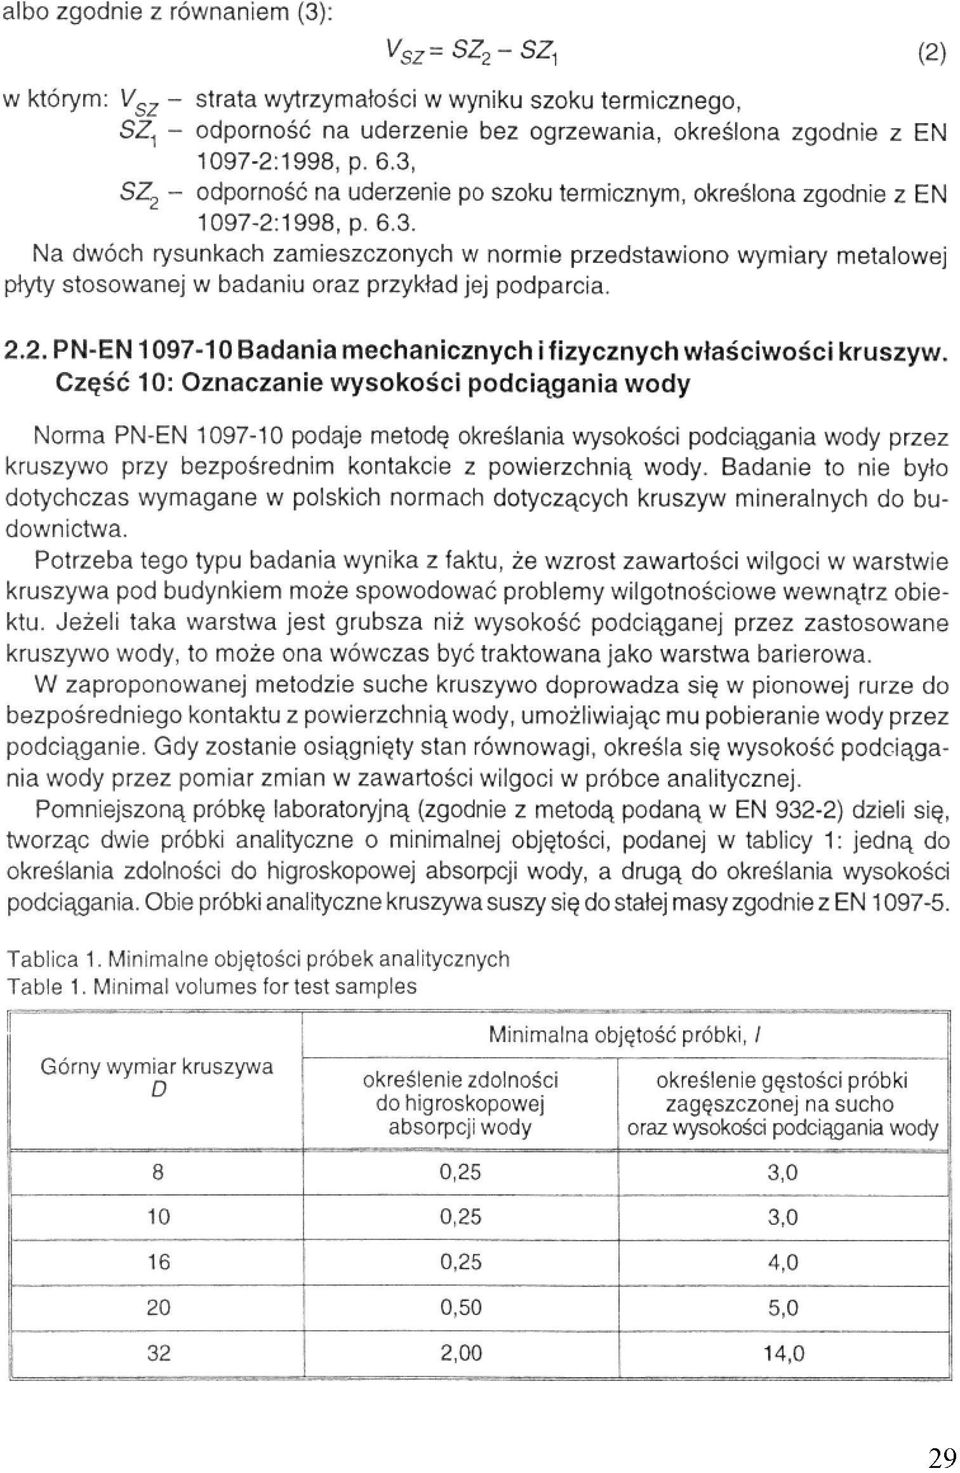 2.2. PN-EN 1097-10 Badania mechanicznych i fizycznych właściwości kruszyw.